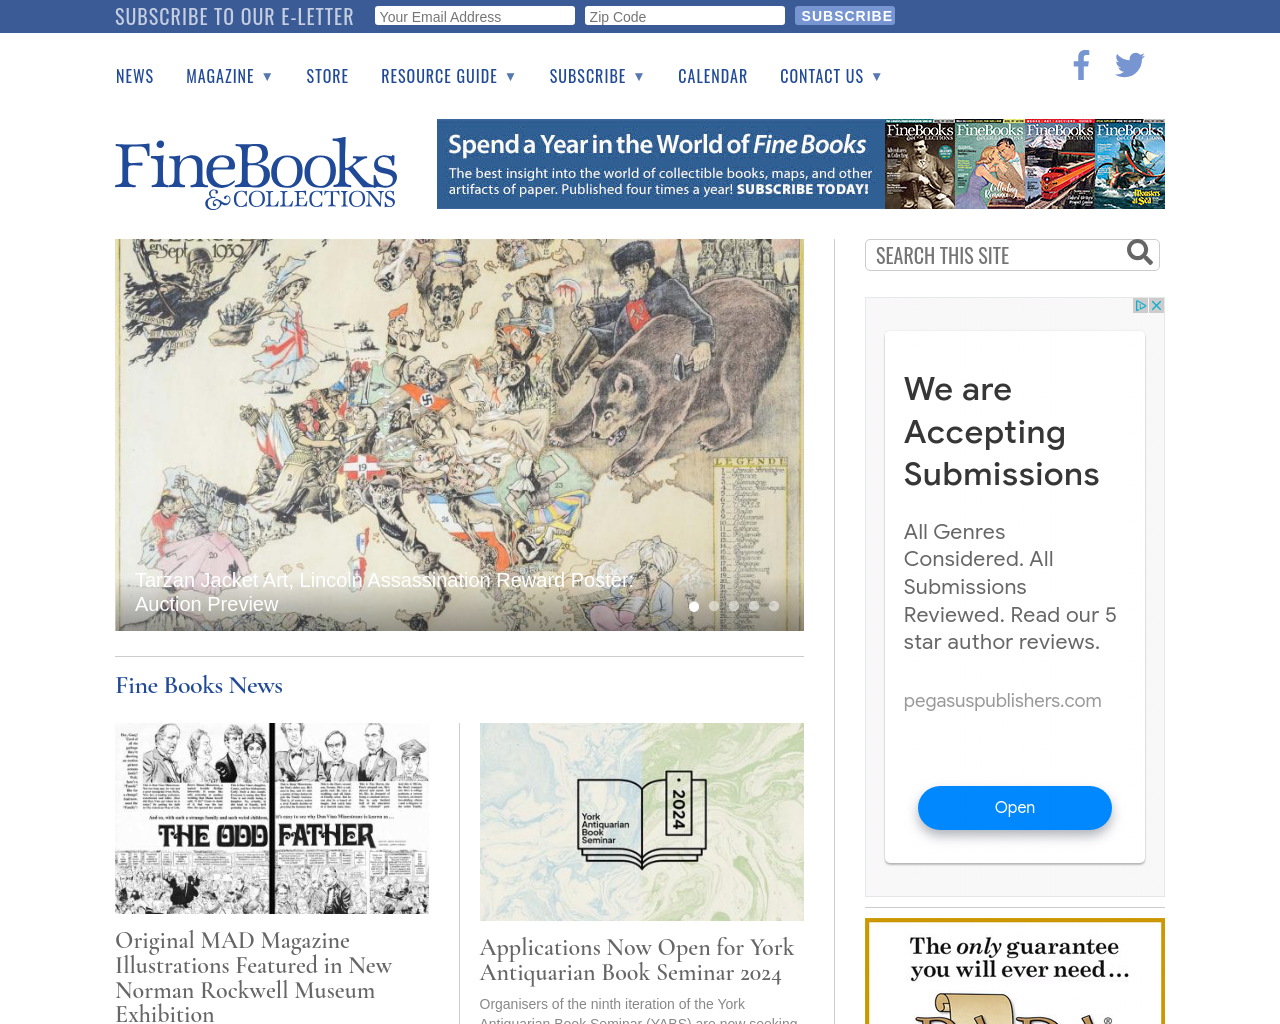 finebooksmagazine.com